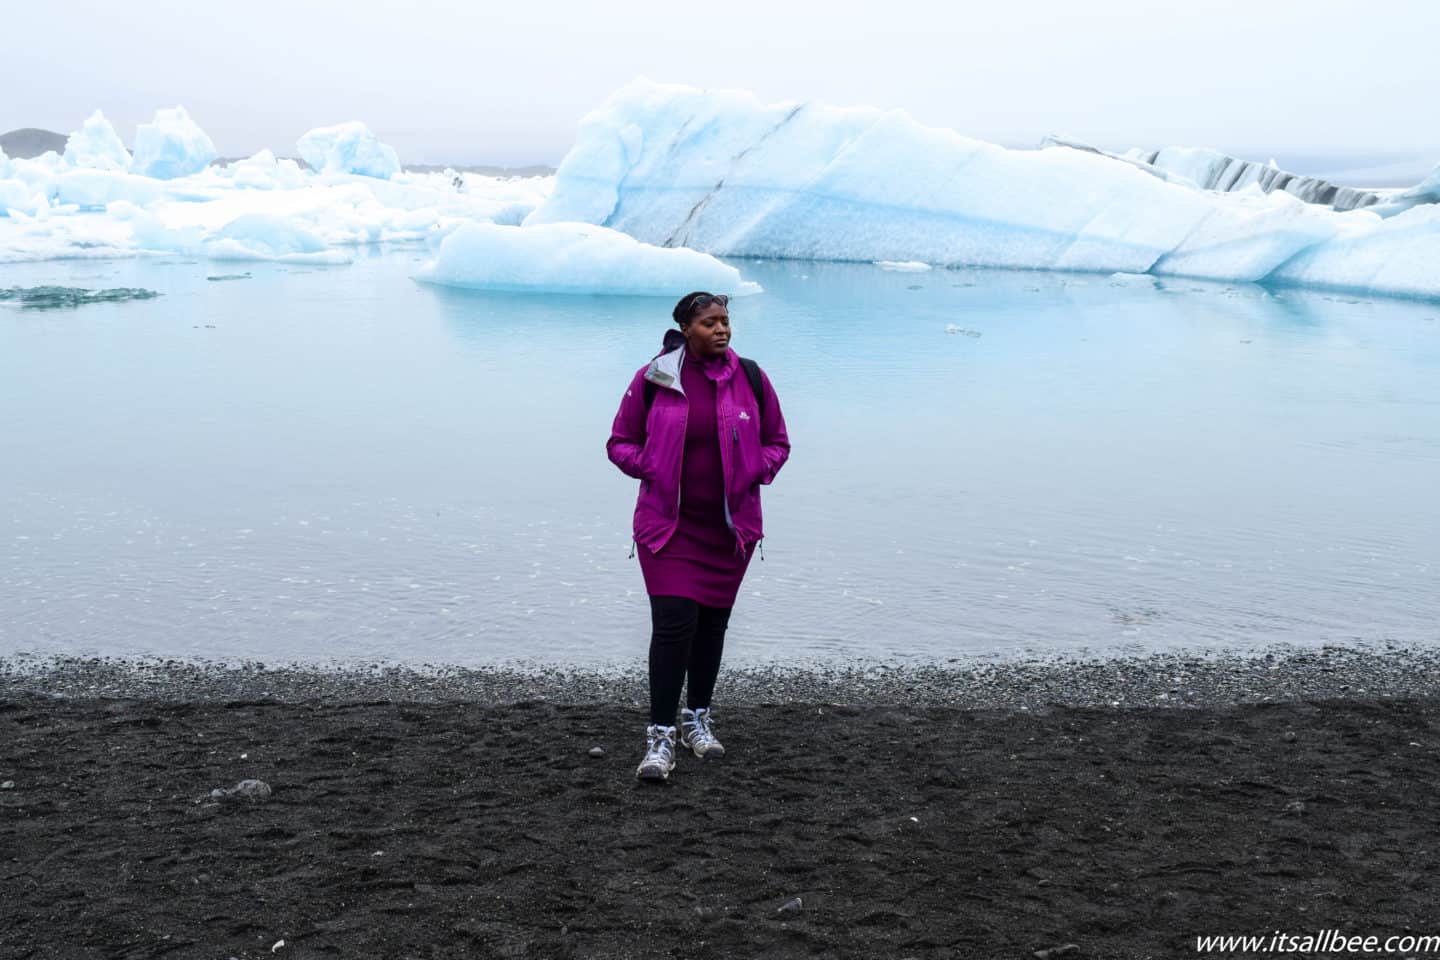 Iceland Essentials - Nejlepší turistické boty na Island - Tipy na nejlepší boty na Island, dobré boty na Island v zimě i v létě. Vycházková obuv, boty do sněhu a další. Vše, co potřebujete vědět o botách, které si zabalit na Island pro různé aktivity. #traveltips #itsallbee #trip #adventure #winter #besttimetovisit www.itsallbee.com #europe #hiking #glacier #lagoon